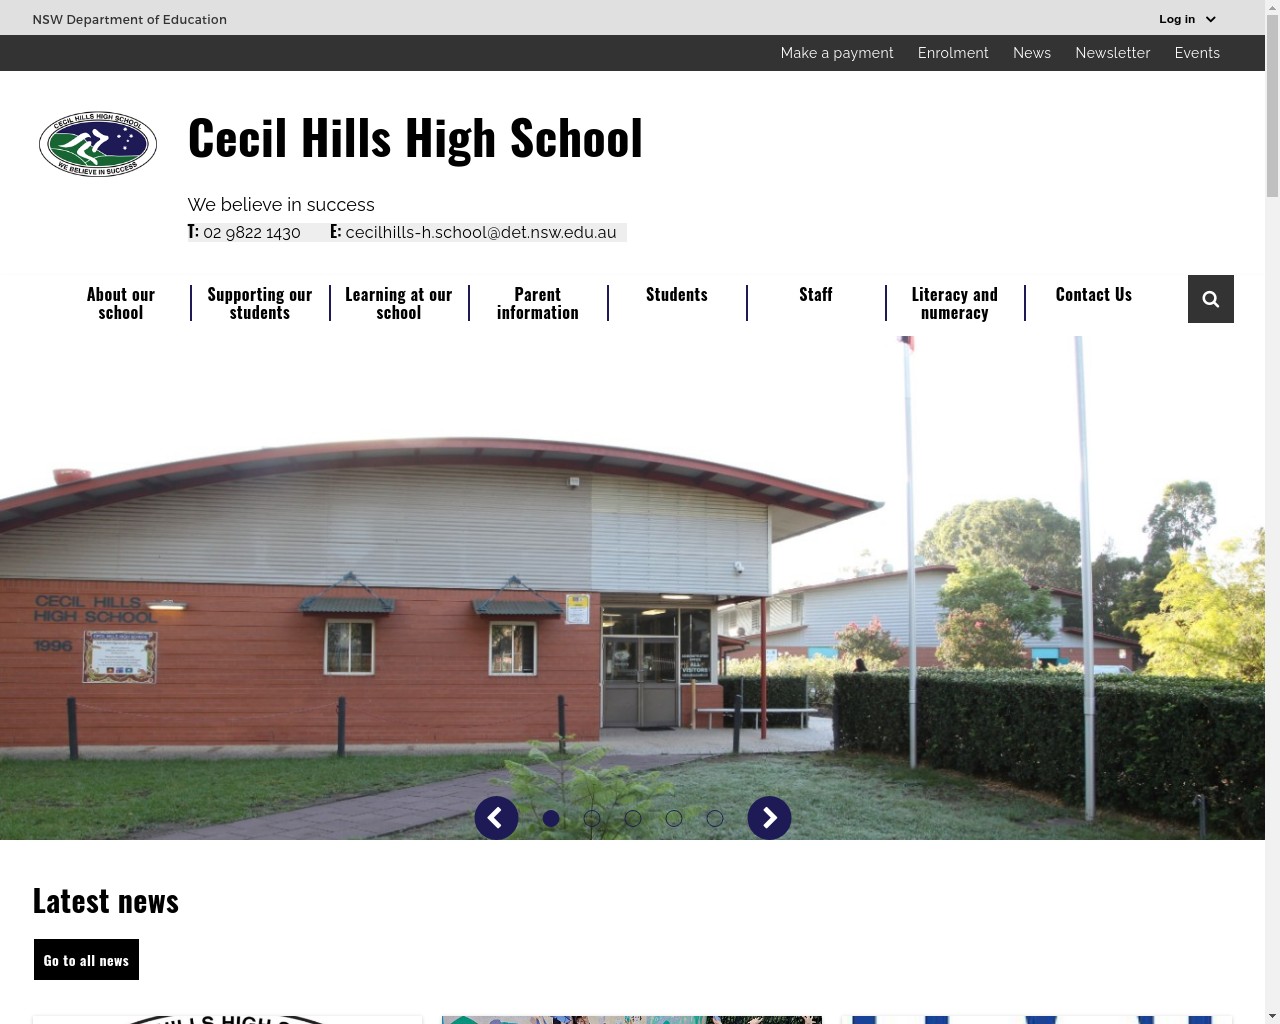 Cecil Hills High School